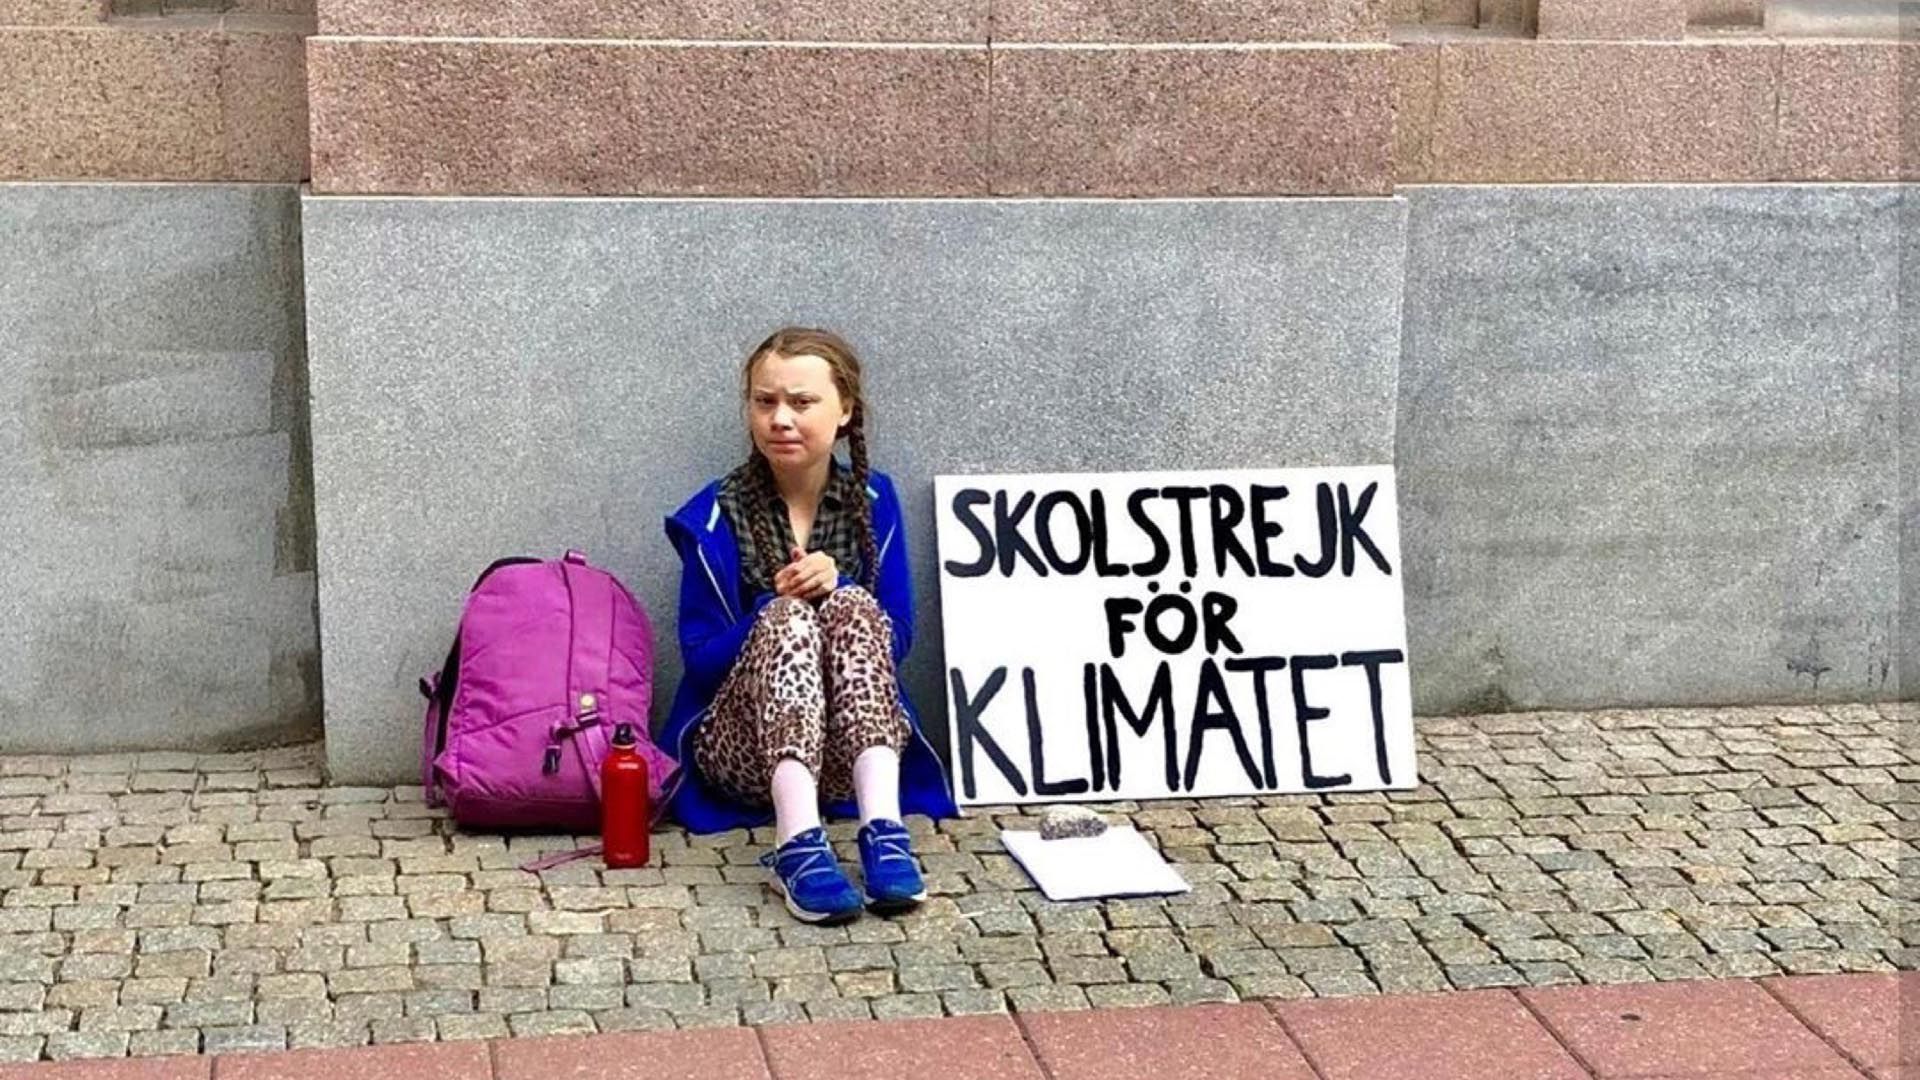 Greta Thunberg protesta en la vereda del Parlamento sueco. “Huelga escolar por el clima”.